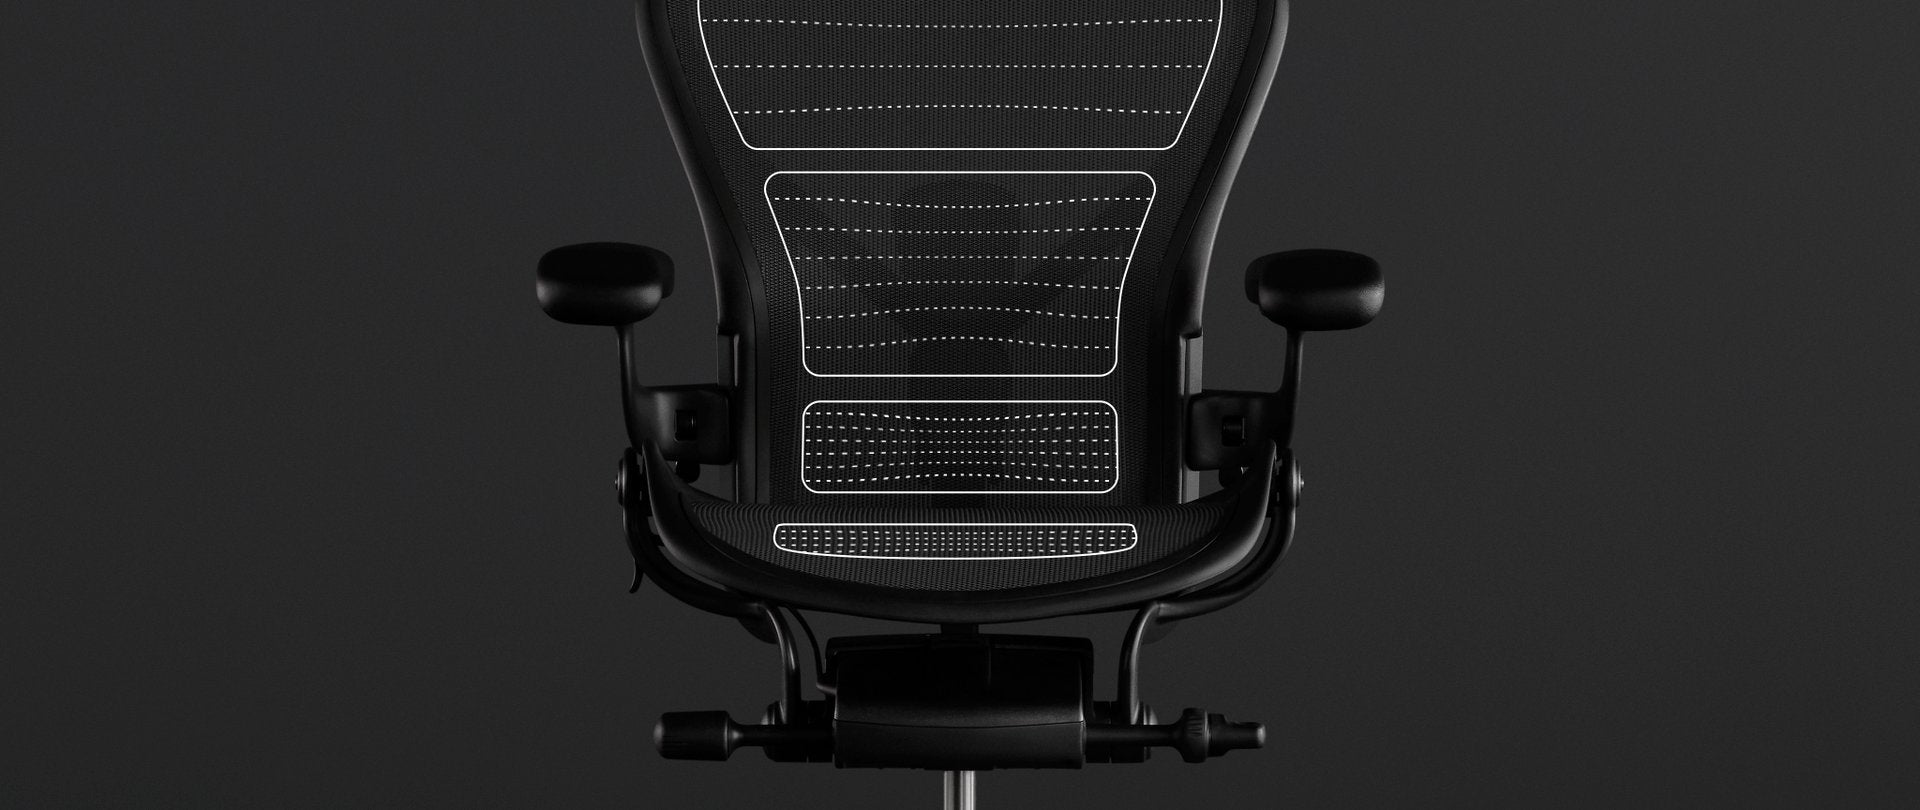 Animation vor einem Foto des Aeron Stuhls in Schwarz zeigt die ergonomischen Vorteile von 8Z Pellicle, dem Membranmaterial des Stuhls.